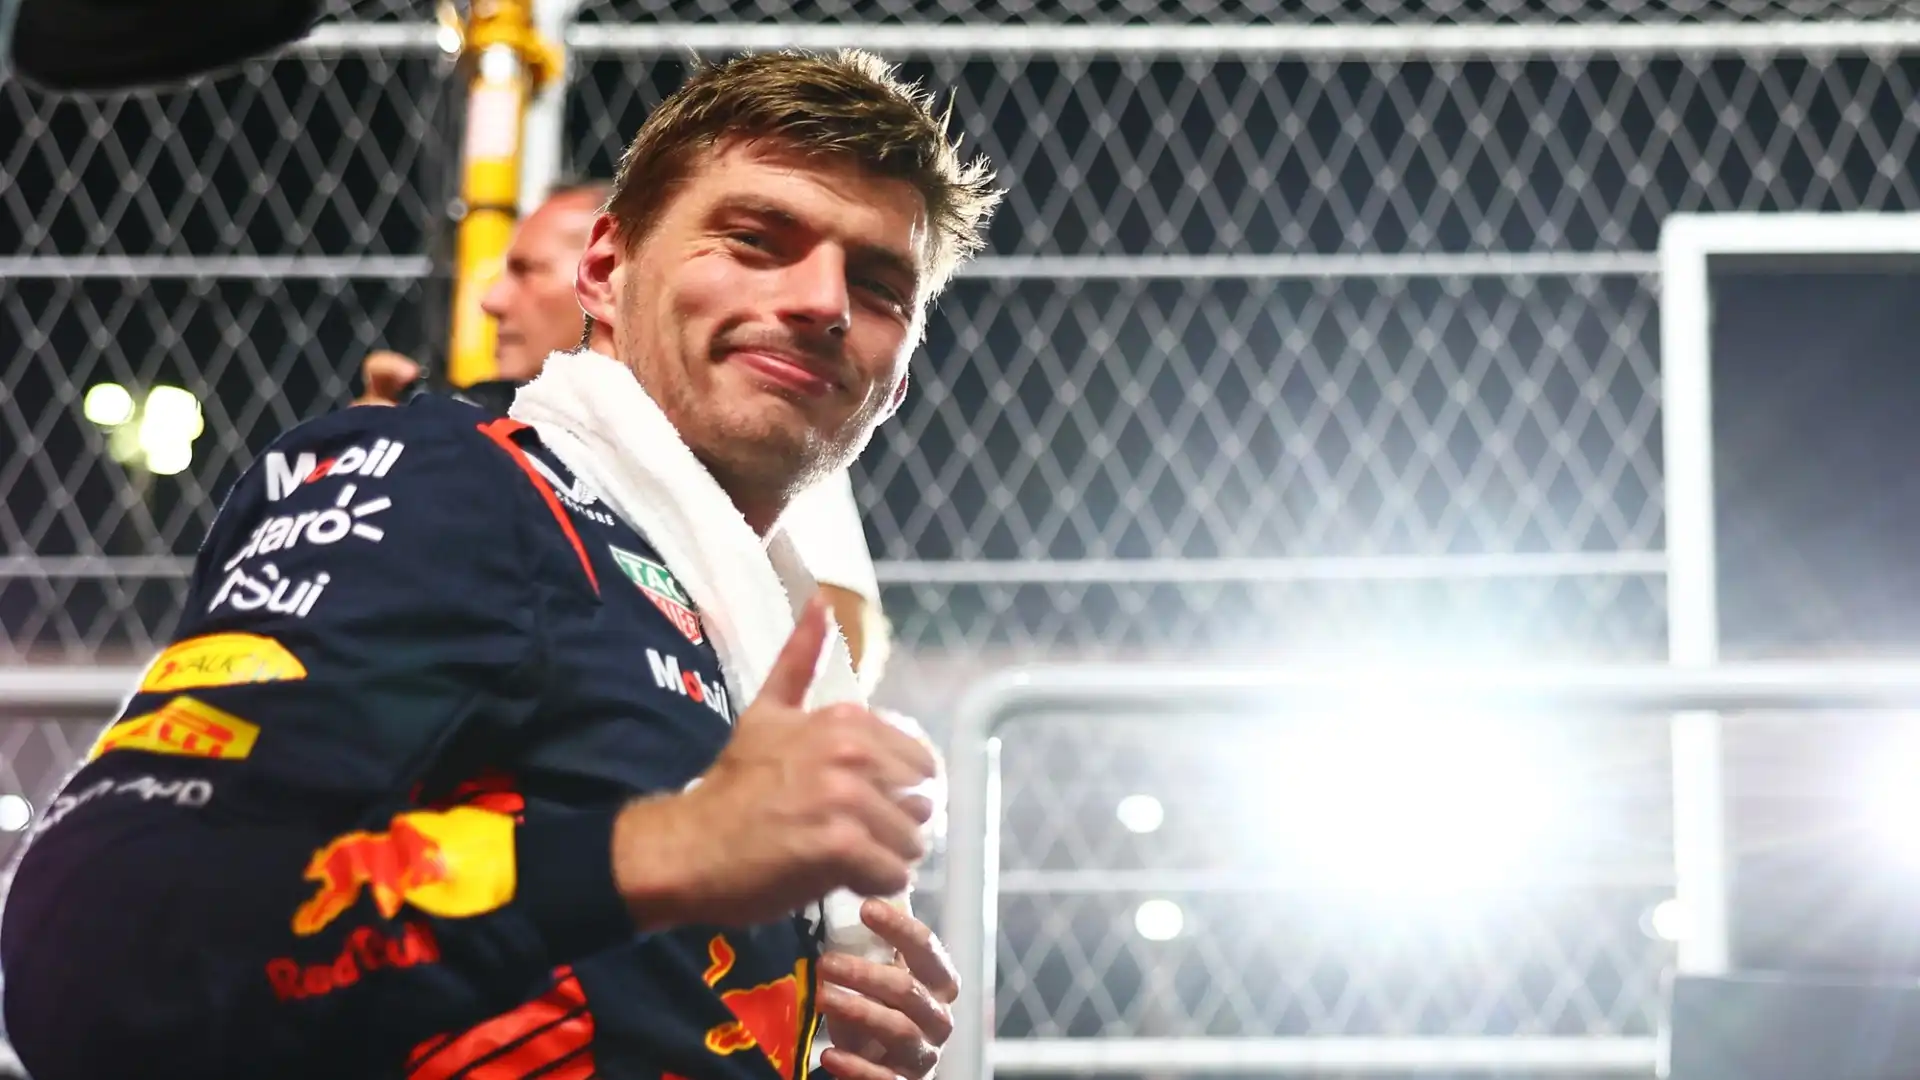 Già in passato Jordan aveva esaltato Verstappen: "Penso che con la stessa macchina, tra Verstappen e Hamilton, vincerebbe Max"